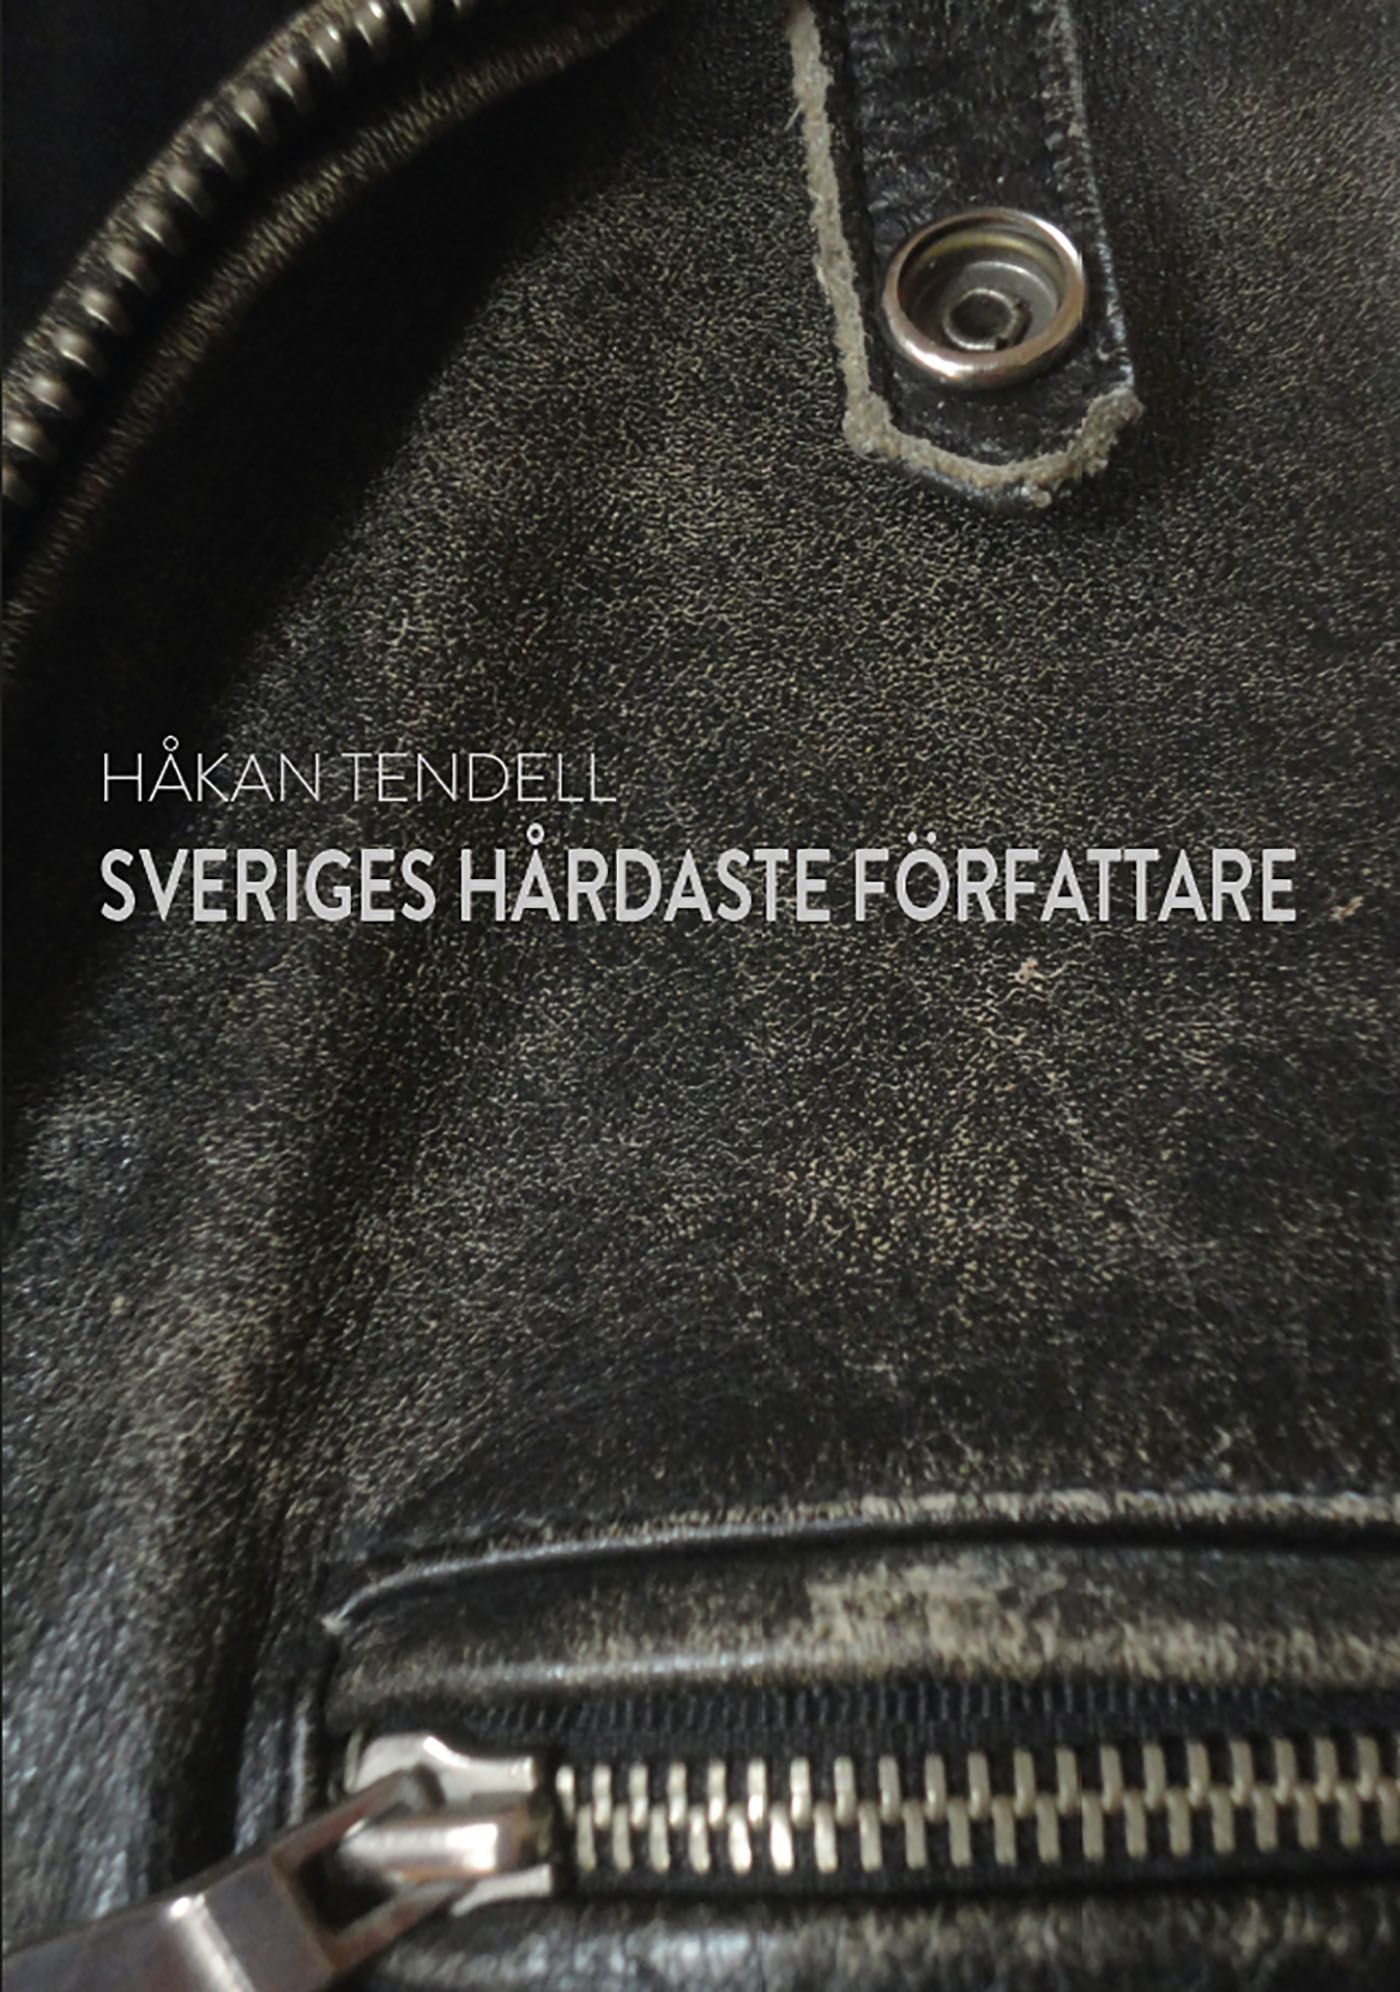 Sveriges hårdaste författare, e-bok av Håkan Tendell